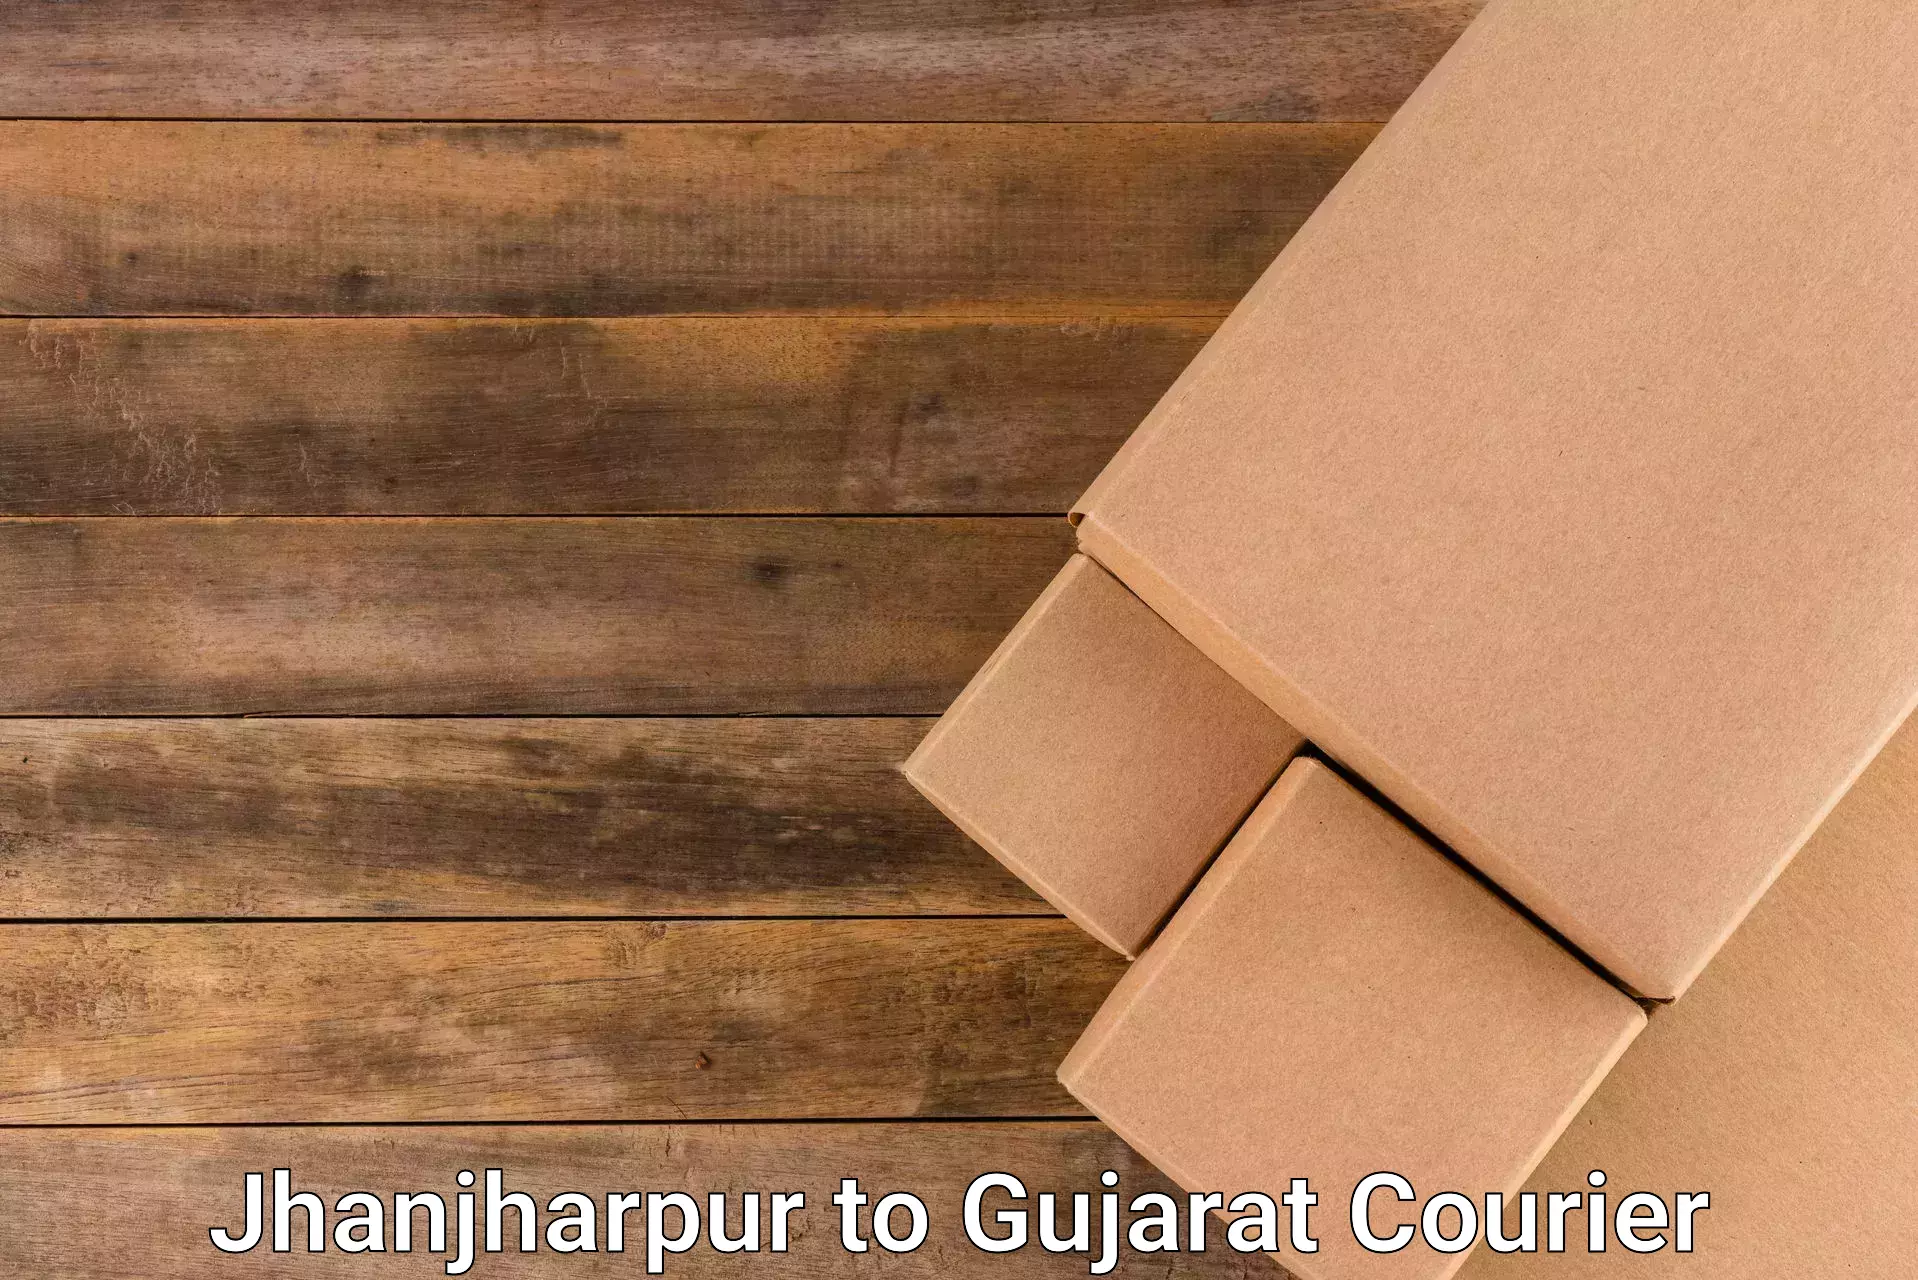 Modern courier technology Jhanjharpur to Kodinar